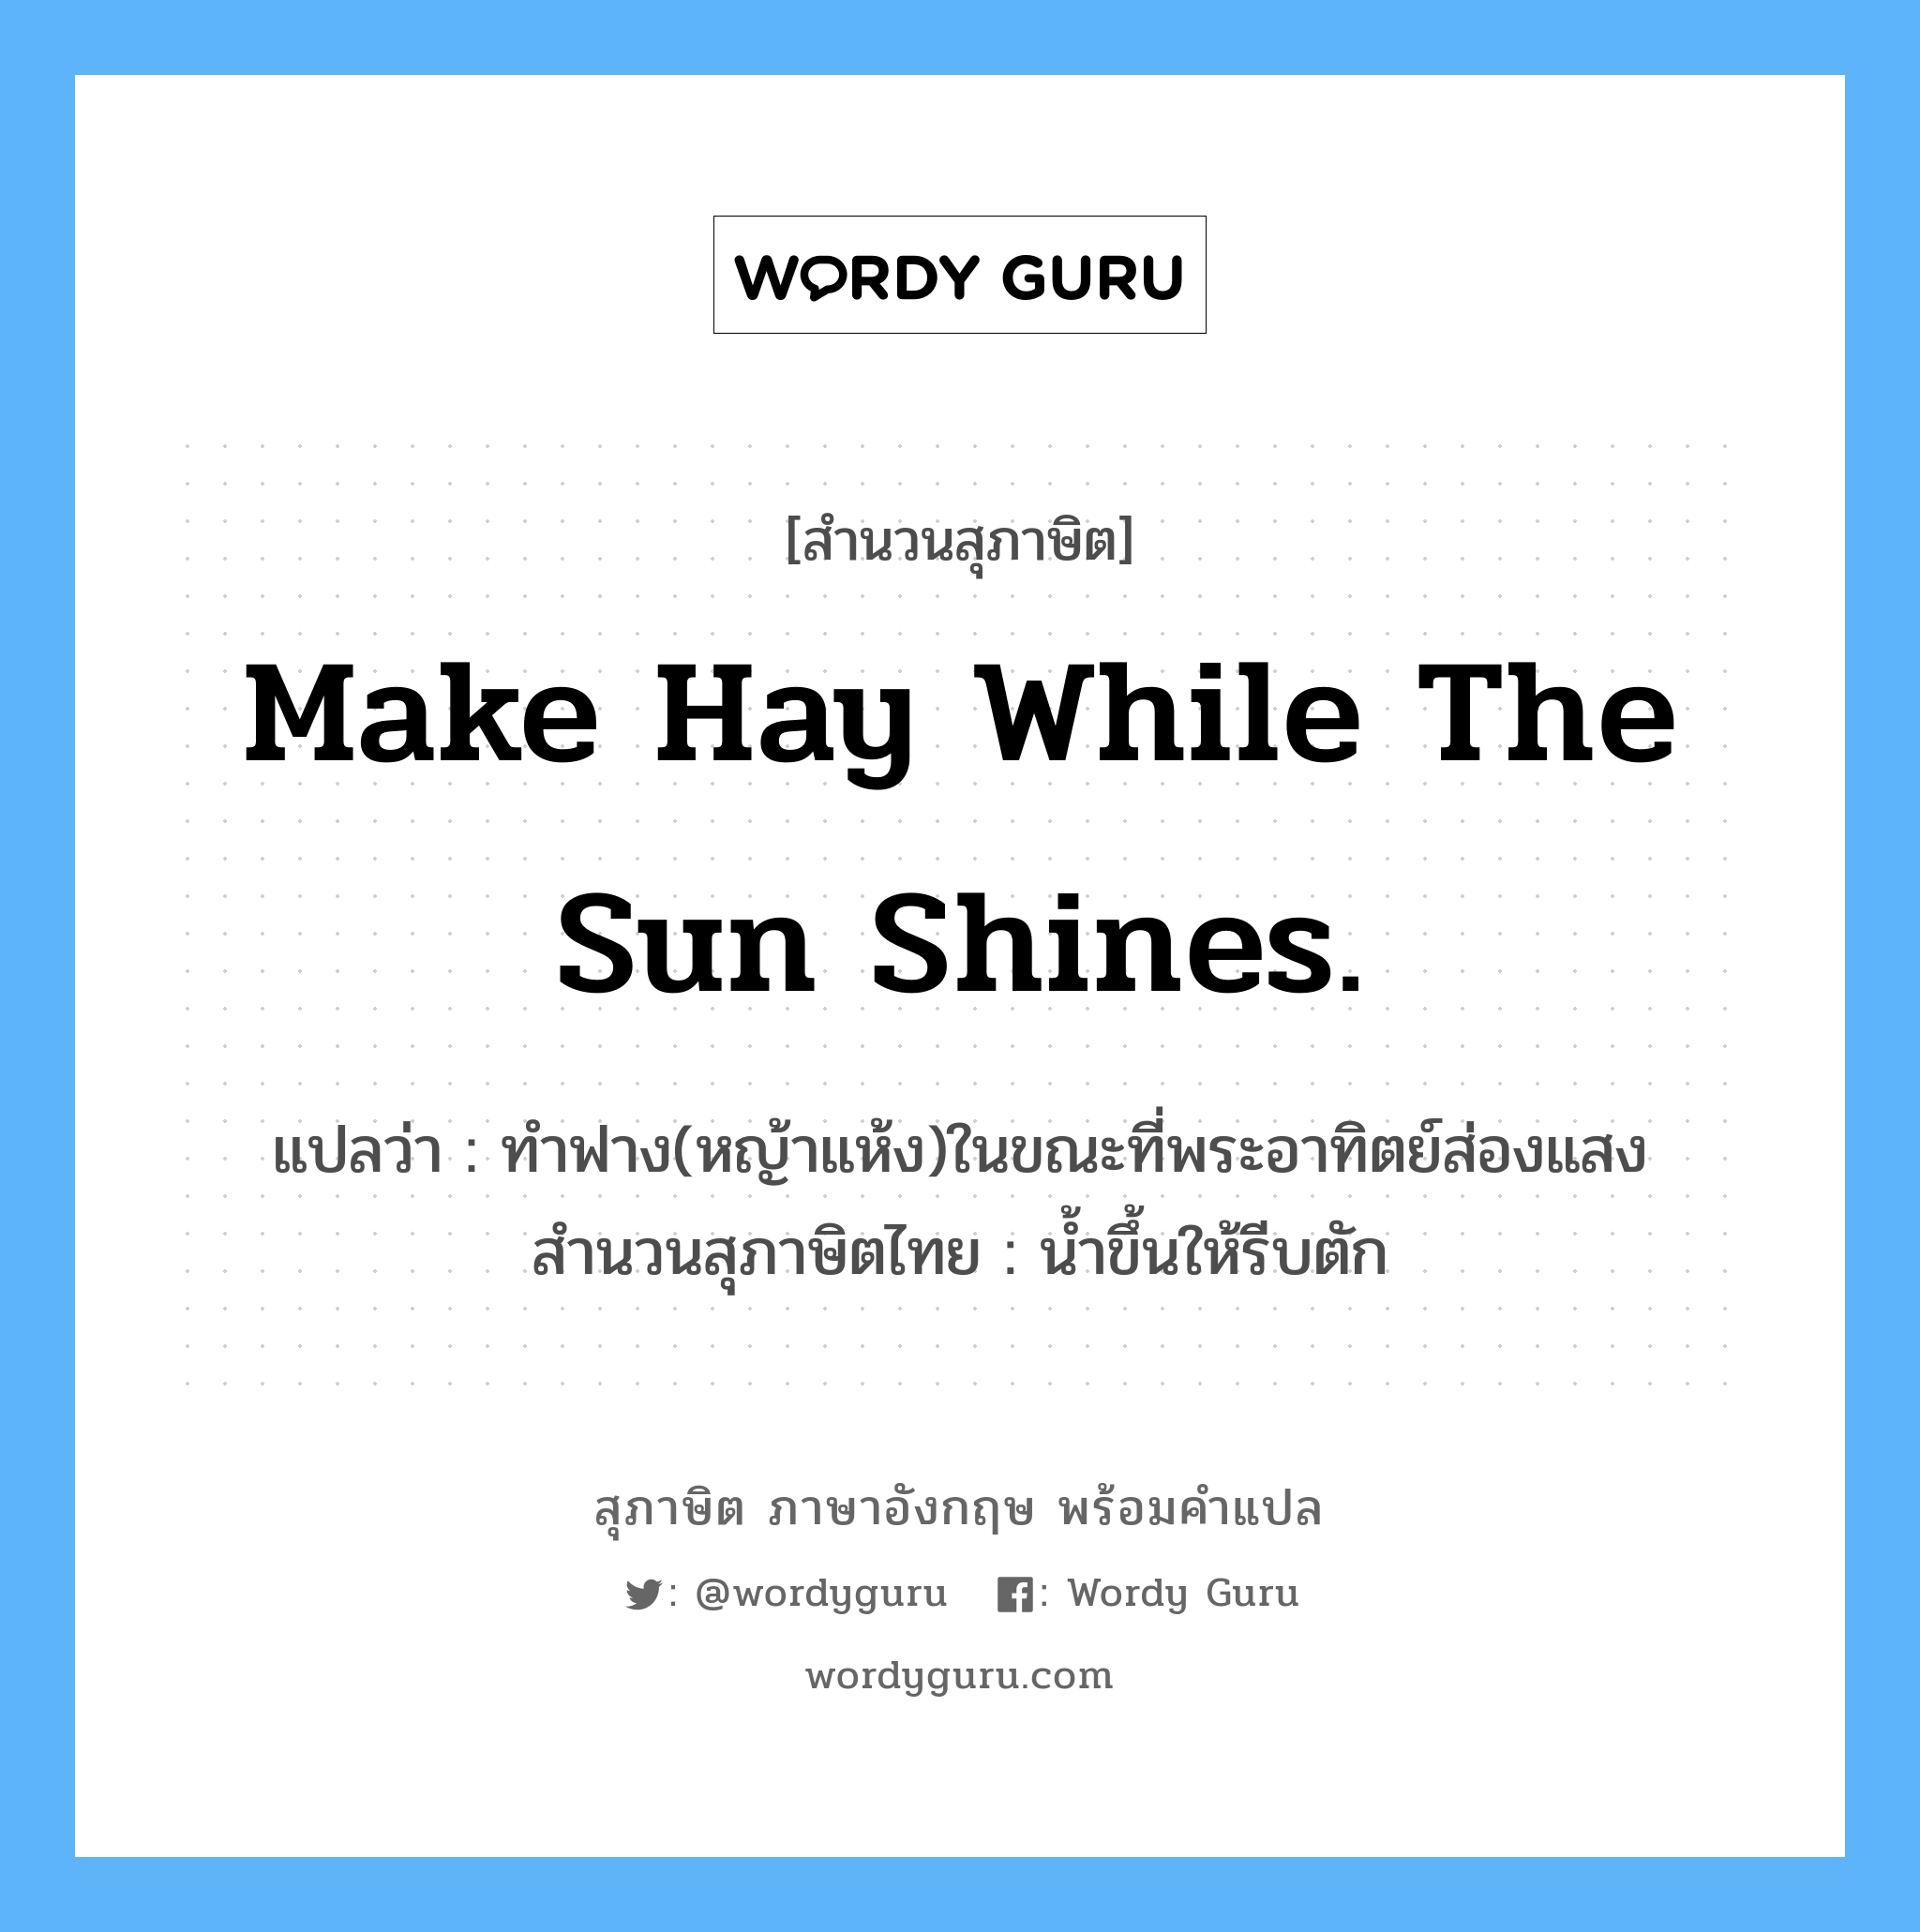 Make hay while the sun shines. แปลว่า?, สำนวนสุภาษิต ภาษาอังกฤษ Make hay while the sun shines. แปลว่า ทำฟาง(หญ้าแห้ง)ในขณะที่พระอาทิตย์ส่องแสง สำนวนสุภาษิตไทย น้ำขึ้นให้รีบตัก